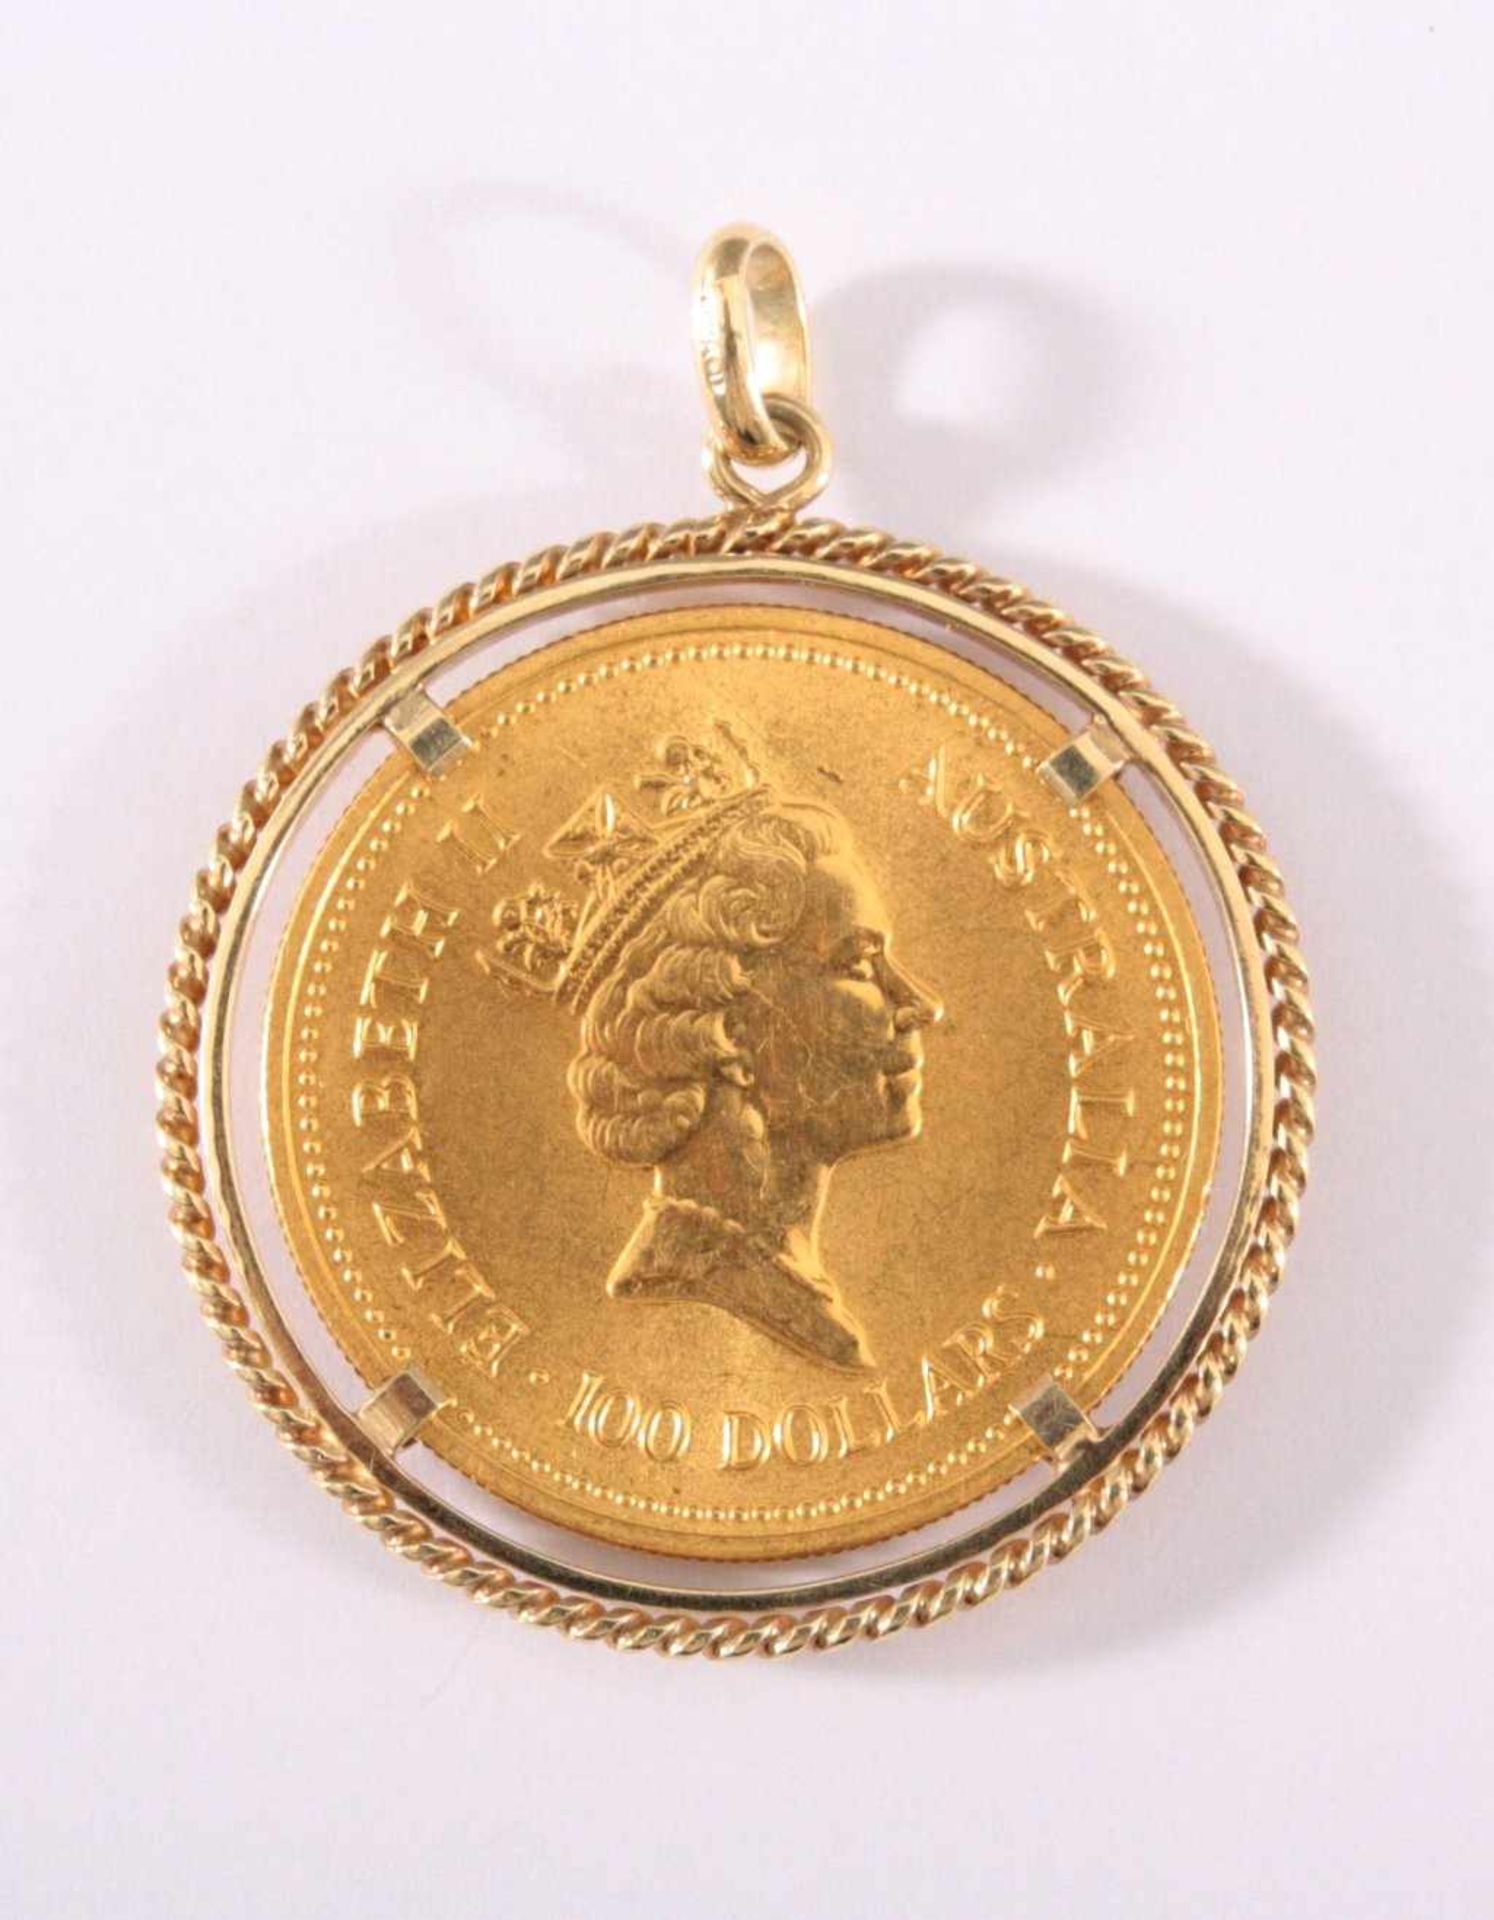 Australien, Elizabeth II., 100 Dollars von 1987999 Feingold, gefasst, Fassung aus 585/000 GG, 35,9